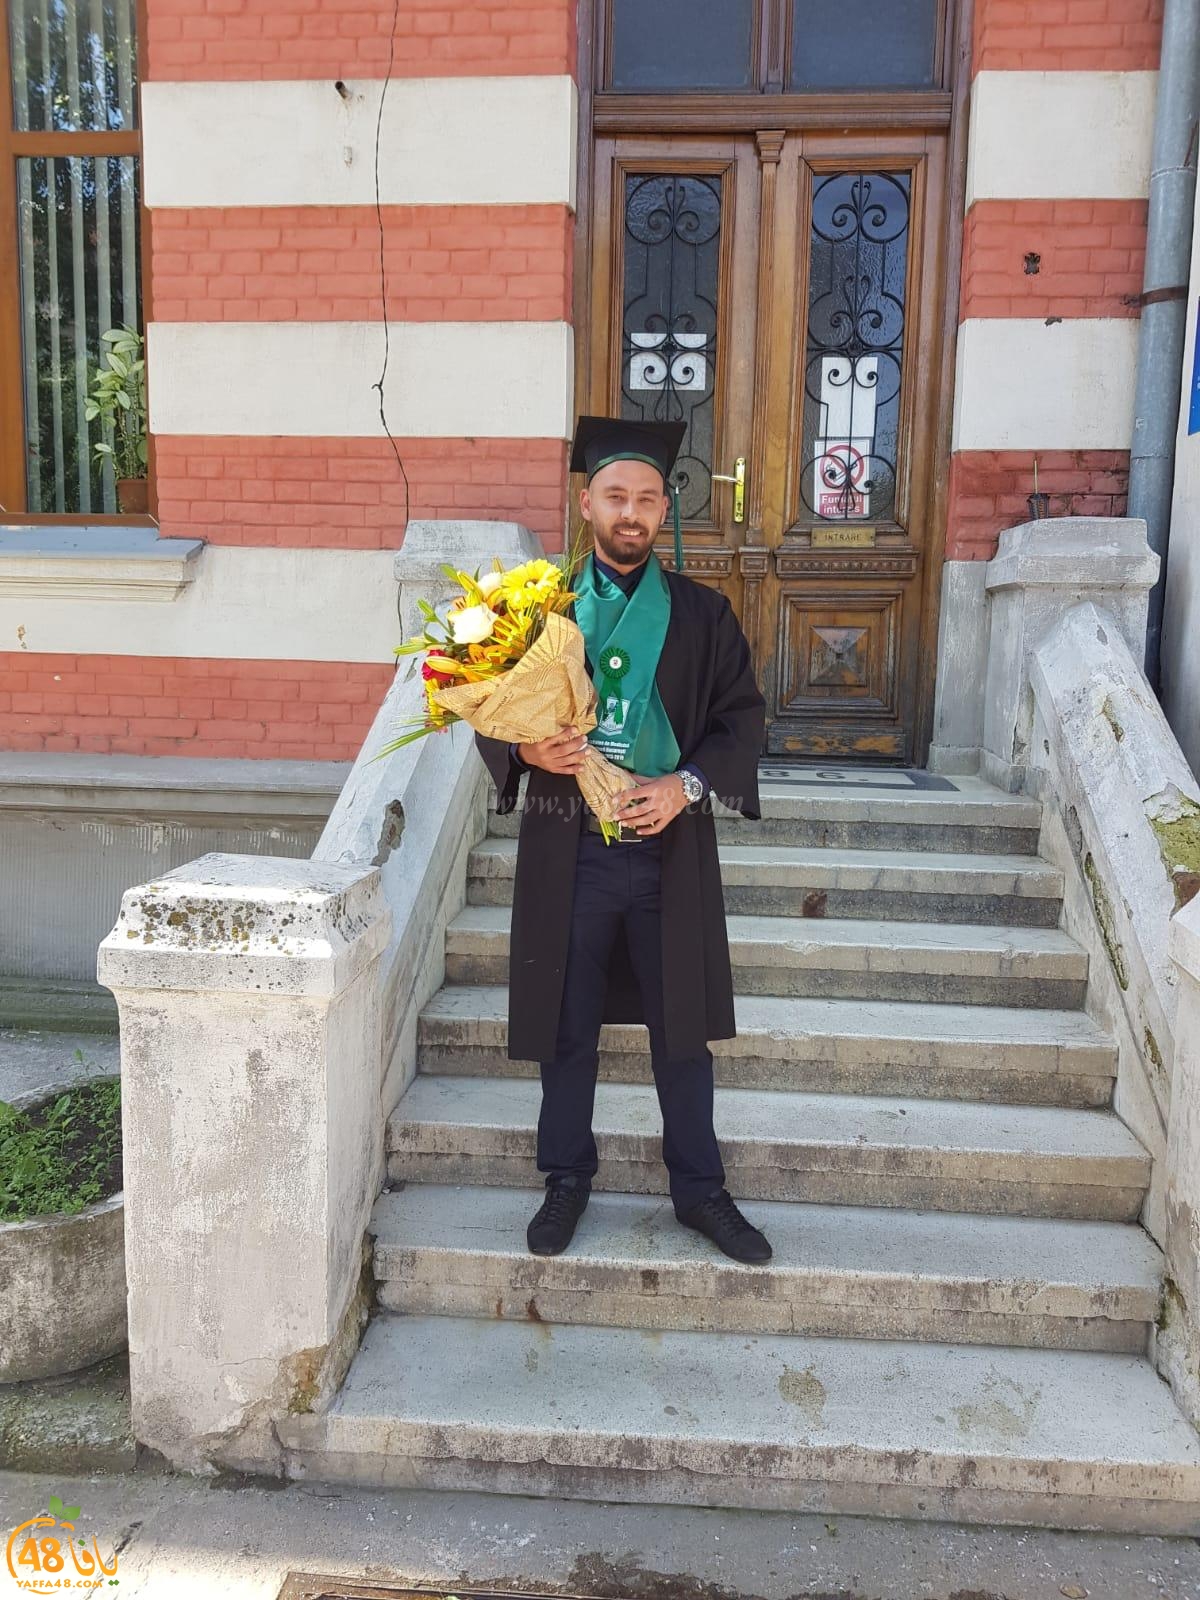   مبروك - تخرّج الطبيب عزات رمزي أبو طالب من جامعة بوخاريست في رومانيا 